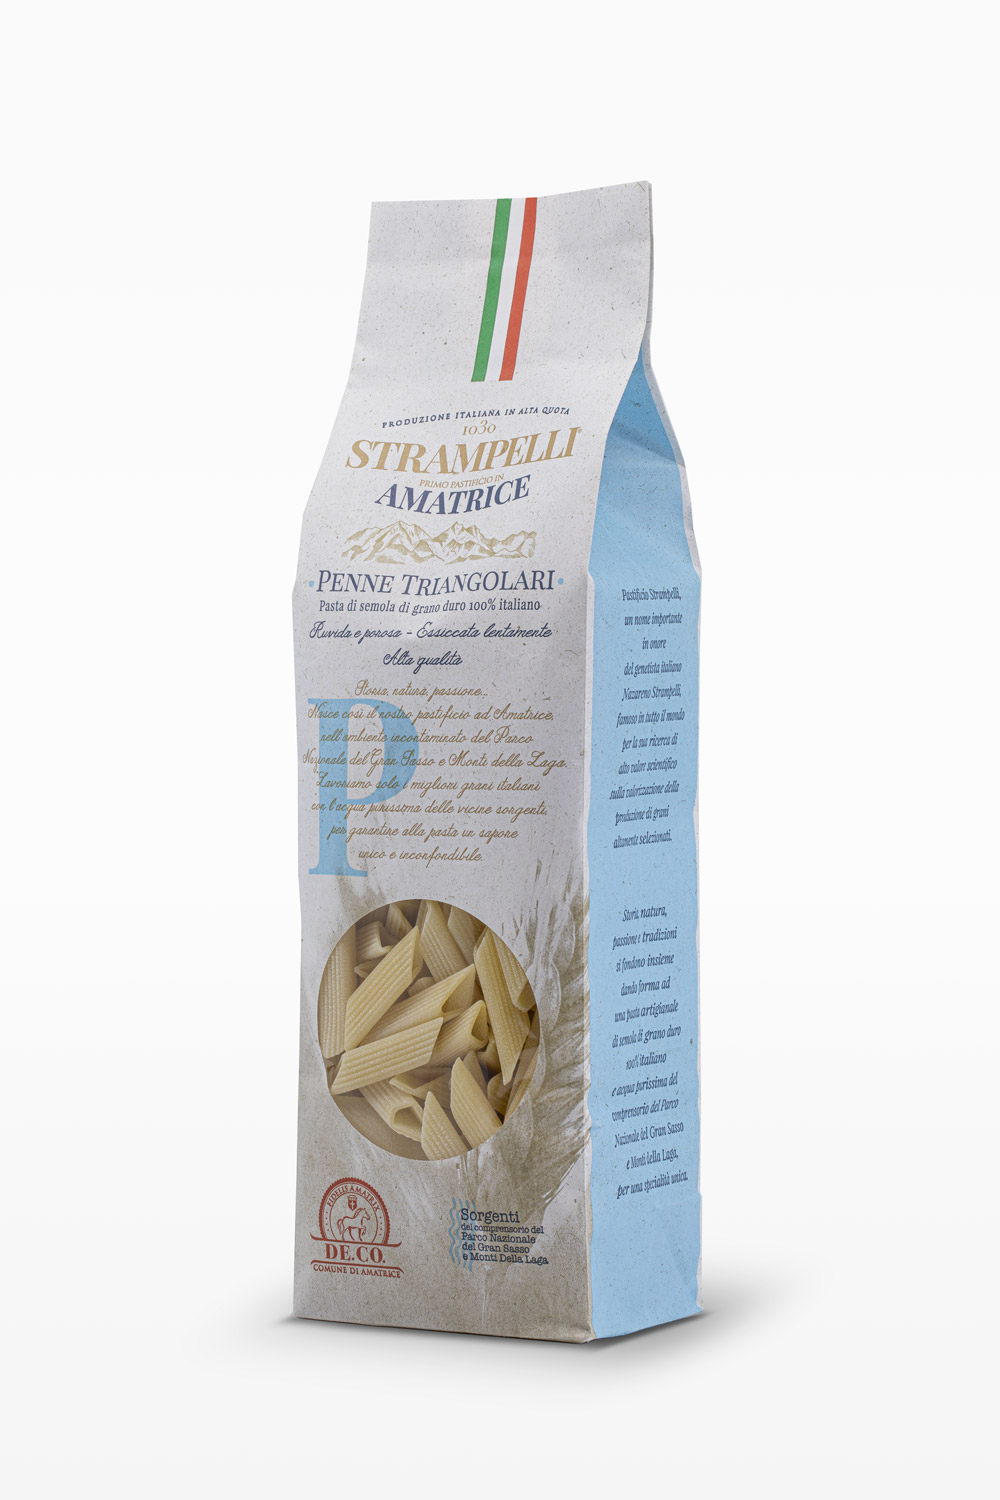 Penne triangolari - Pasta di semola di grano duro, ruvida e porosa, grano 100% italiano, essiccazione lenta a bassa temperatura.